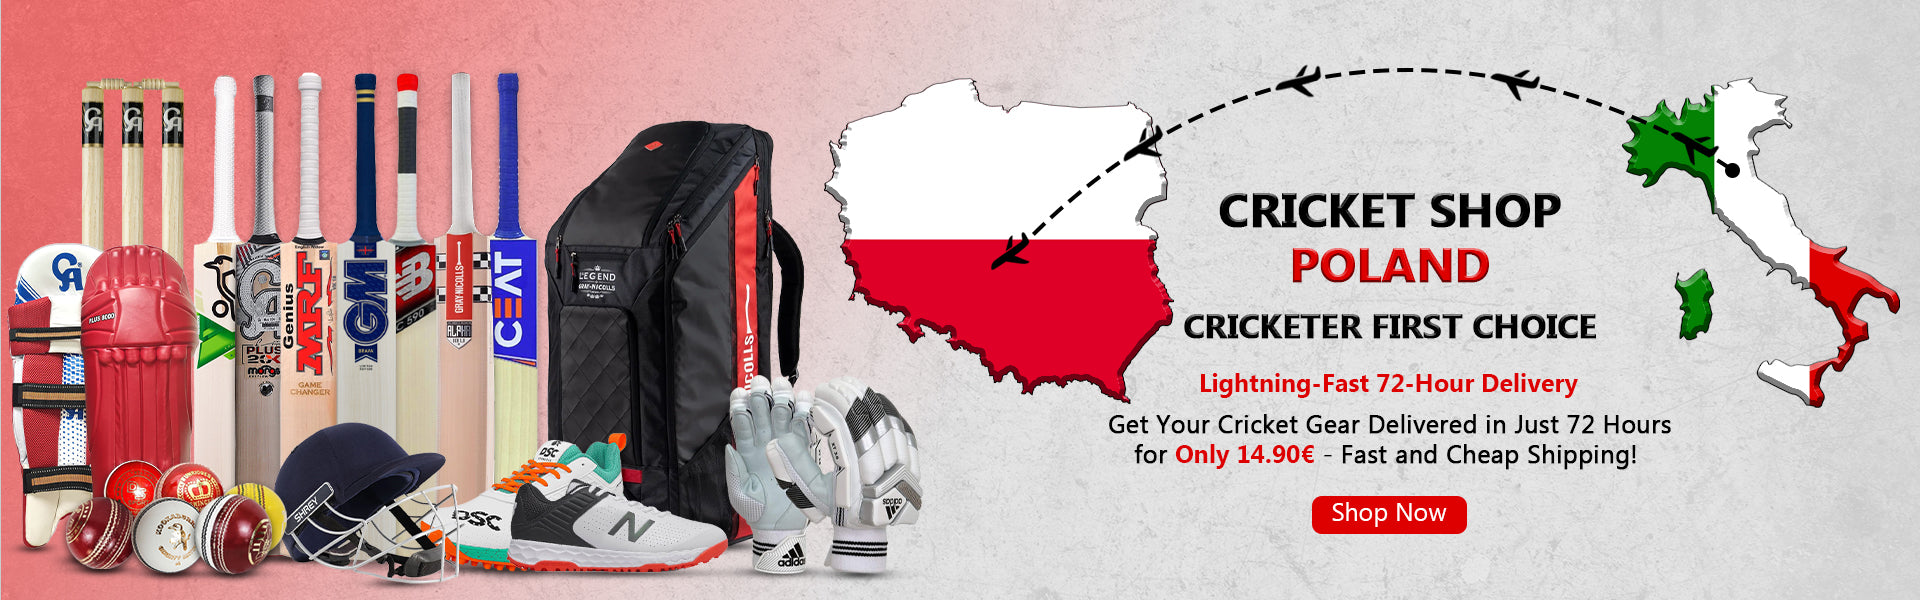 Cricket Shop Poland | Cricketer first Choice